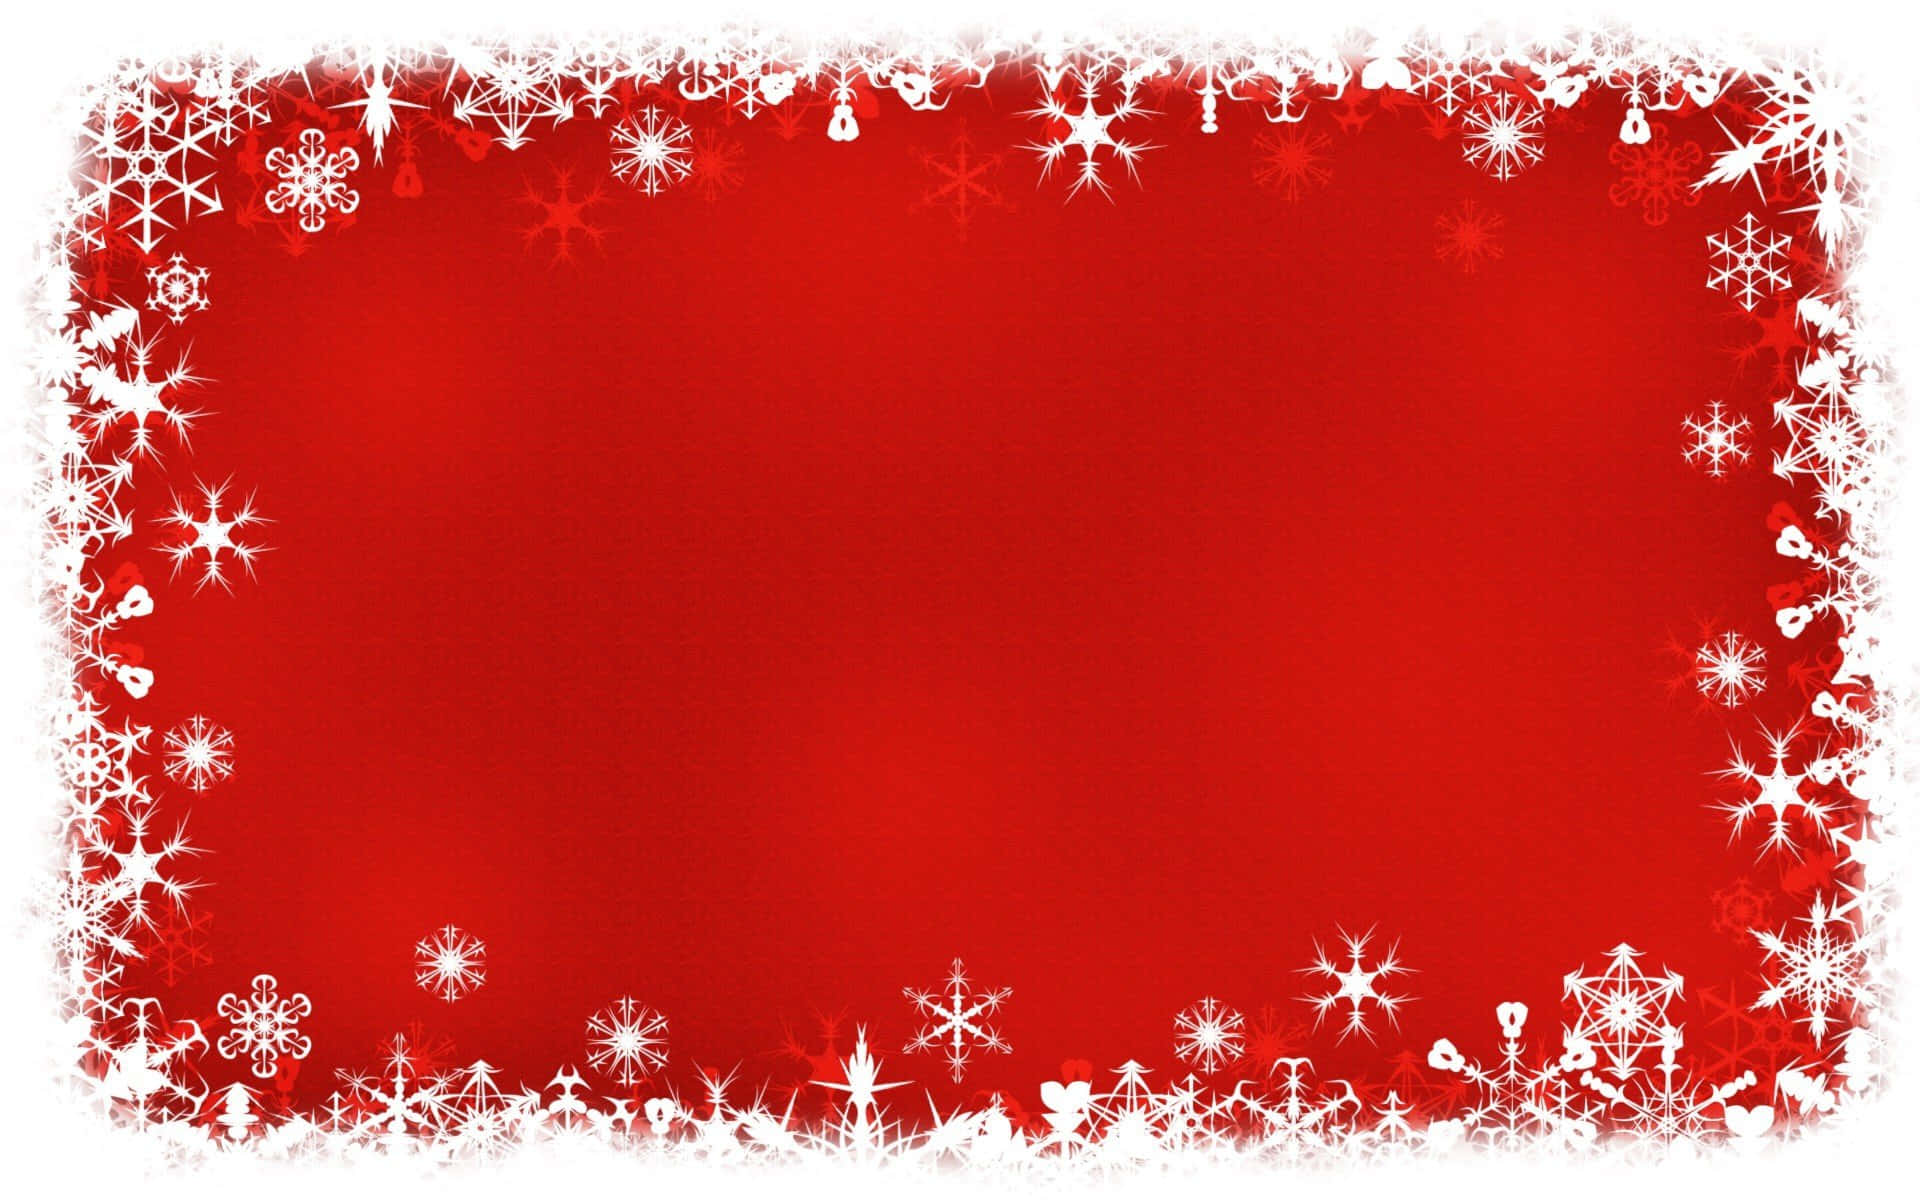 Unfondo Festivo De Navidad Para Powerpoint Con Luces, Nieve Y Adornos.